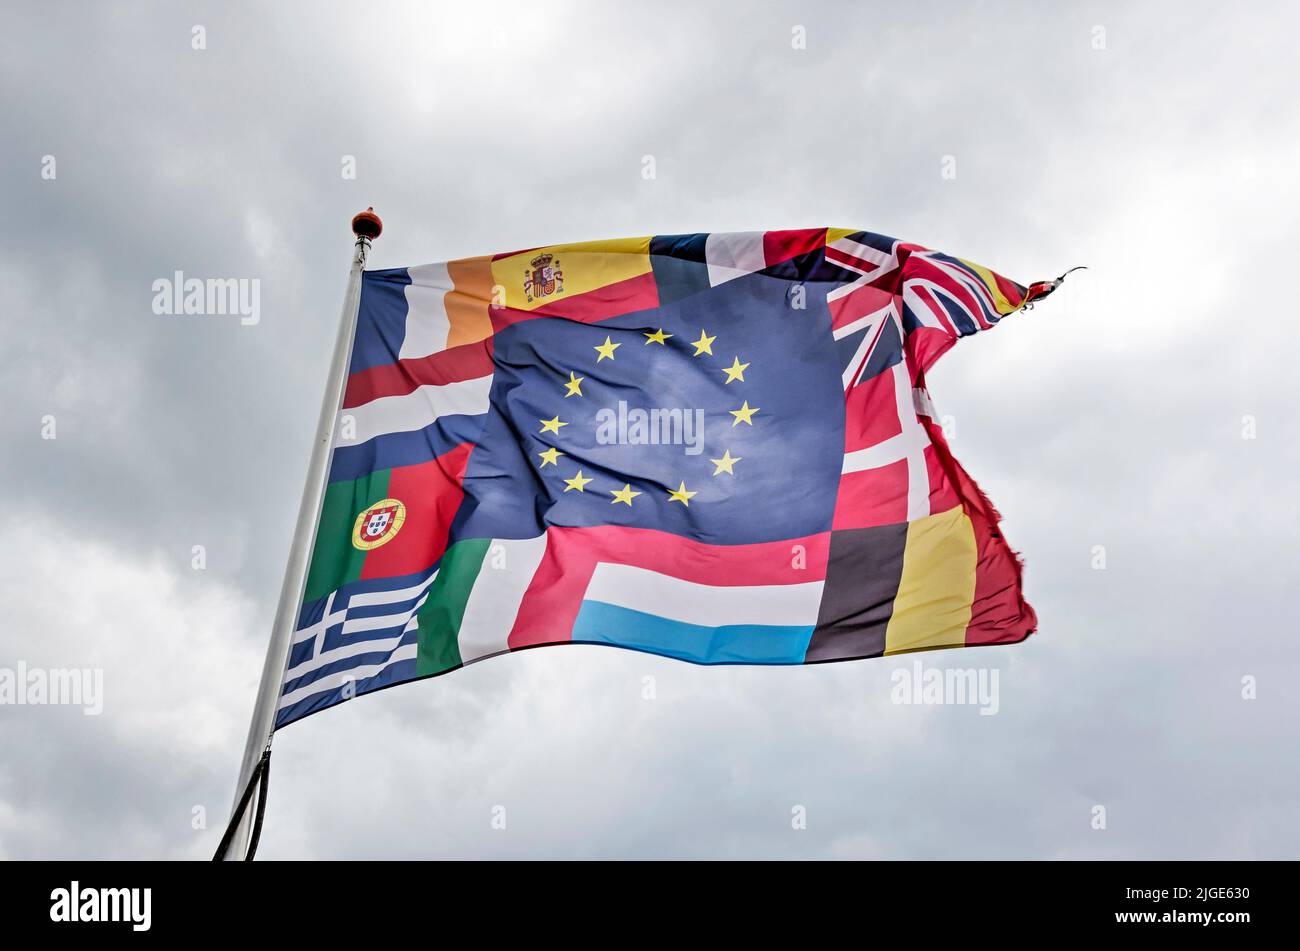 Numansdorp, pays-Bas, 3 juillet 2022: Grand drapeau avec drapeau jaune-bleu de l'Union européenne ainsi que drapeaux de plusieurs autres pays includin Banque D'Images